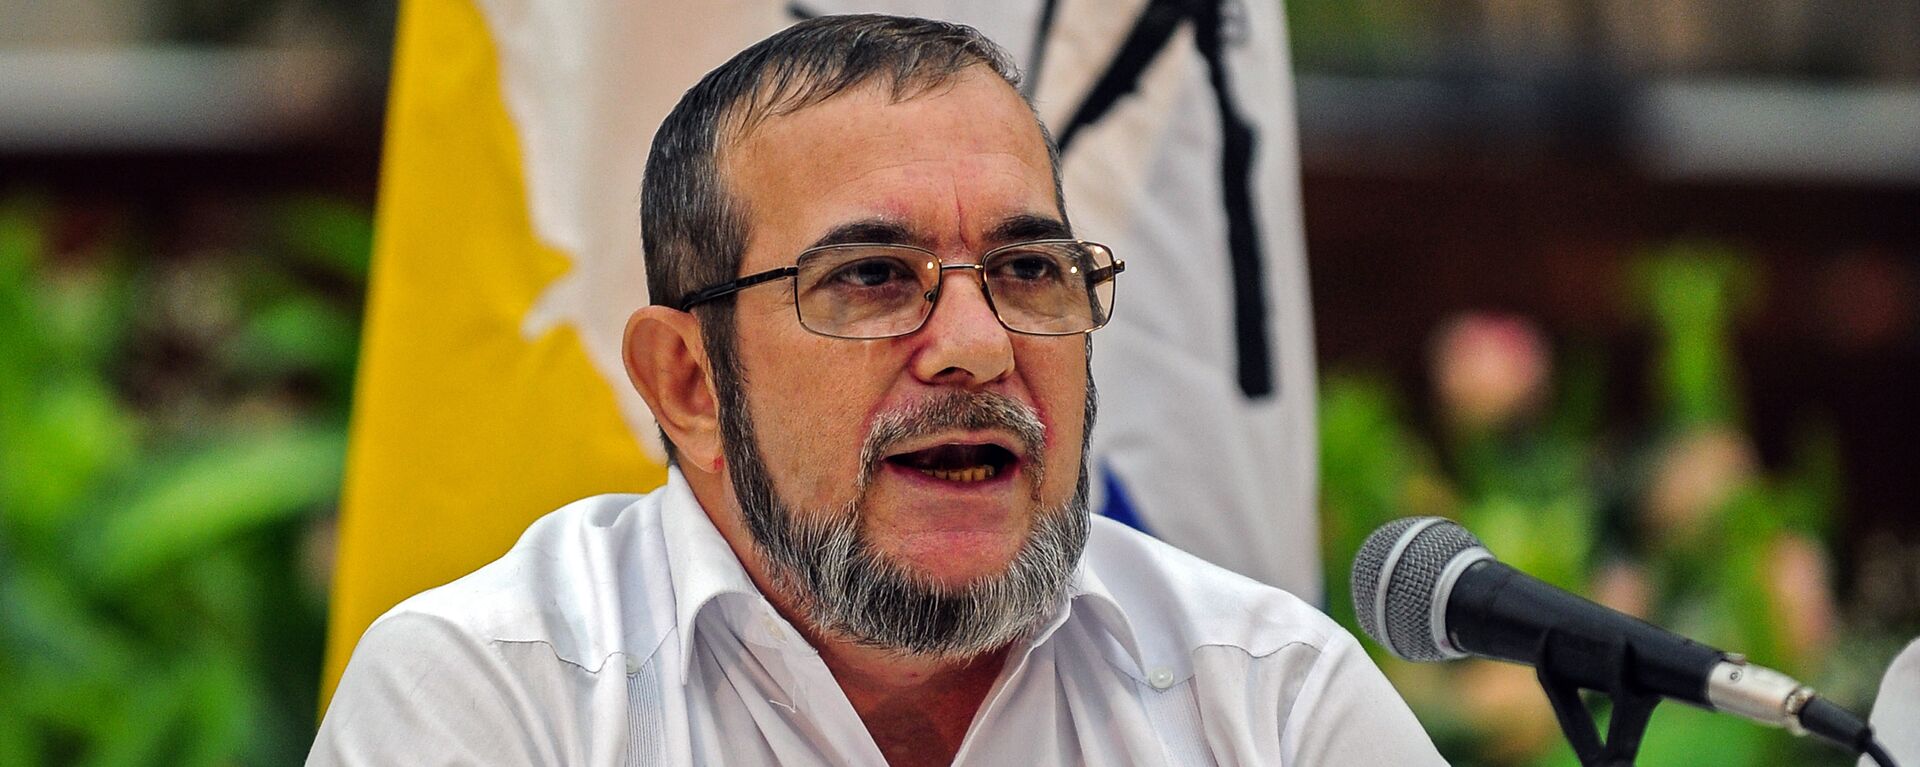 Rodrigo Londoño Echeverri, alias 'Timochenko', máximo líder de las FARC - Sputnik Mundo, 1920, 17.06.2021